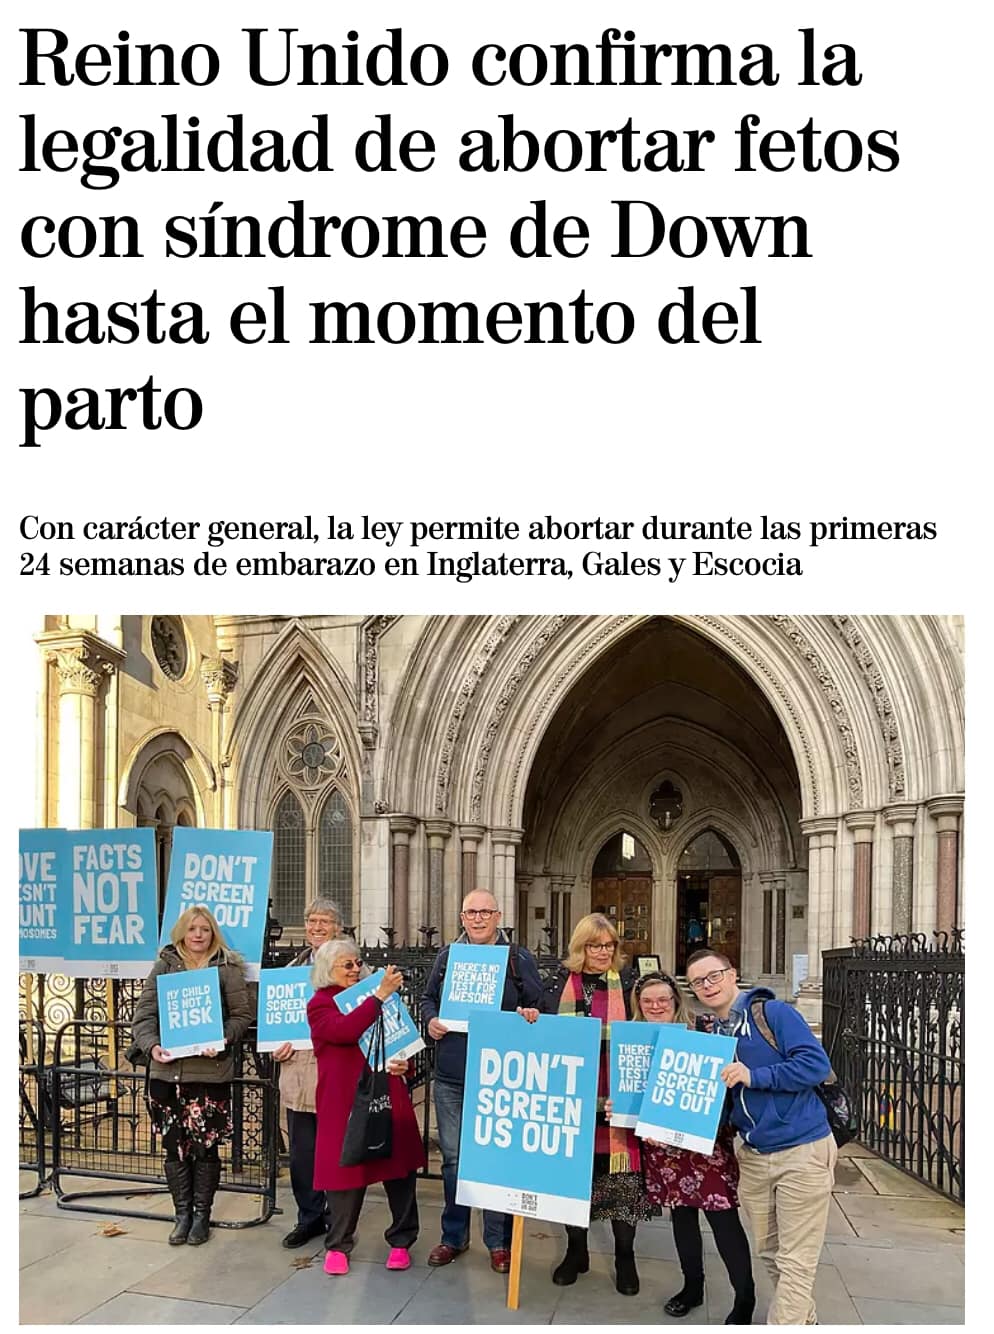 Imagen de una noticia con el siguiente titular: "Reino Unido confirma la legalidad de abortar fetos con Síndrome de Down hasta el momento del parto"